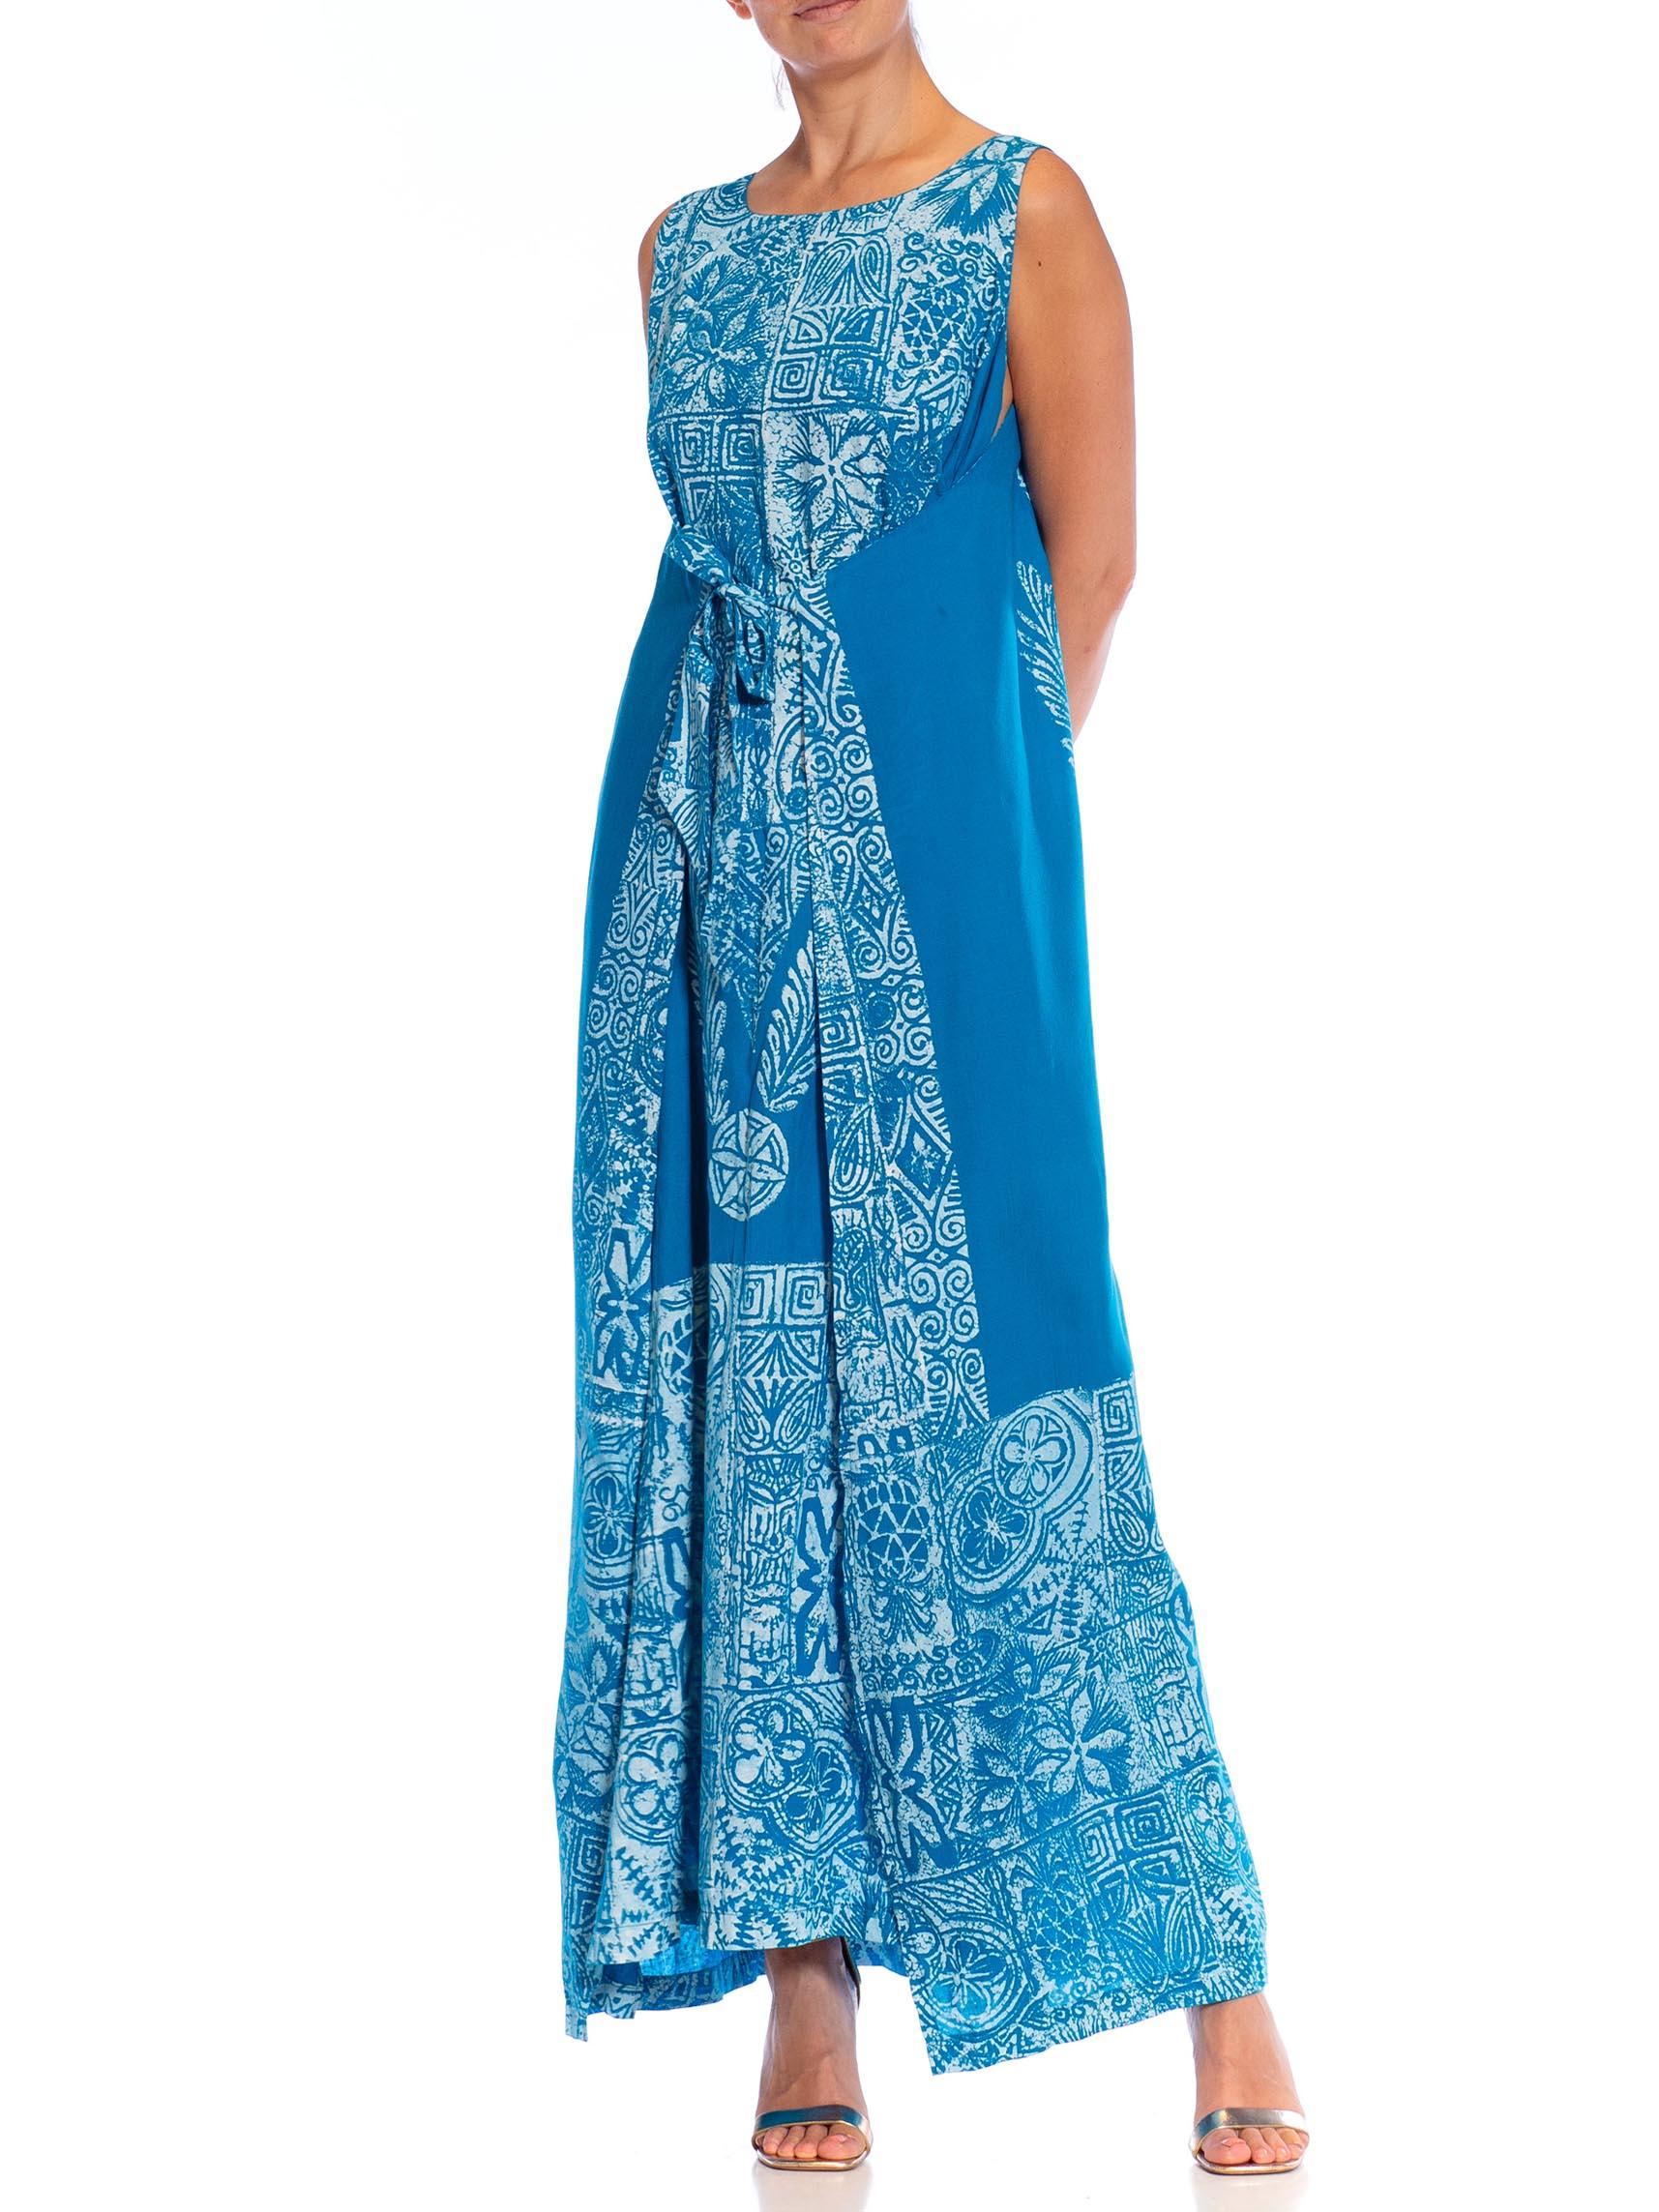 1980S Teal Cotton Blend Tiki Print Wrap Dress For Sale 1